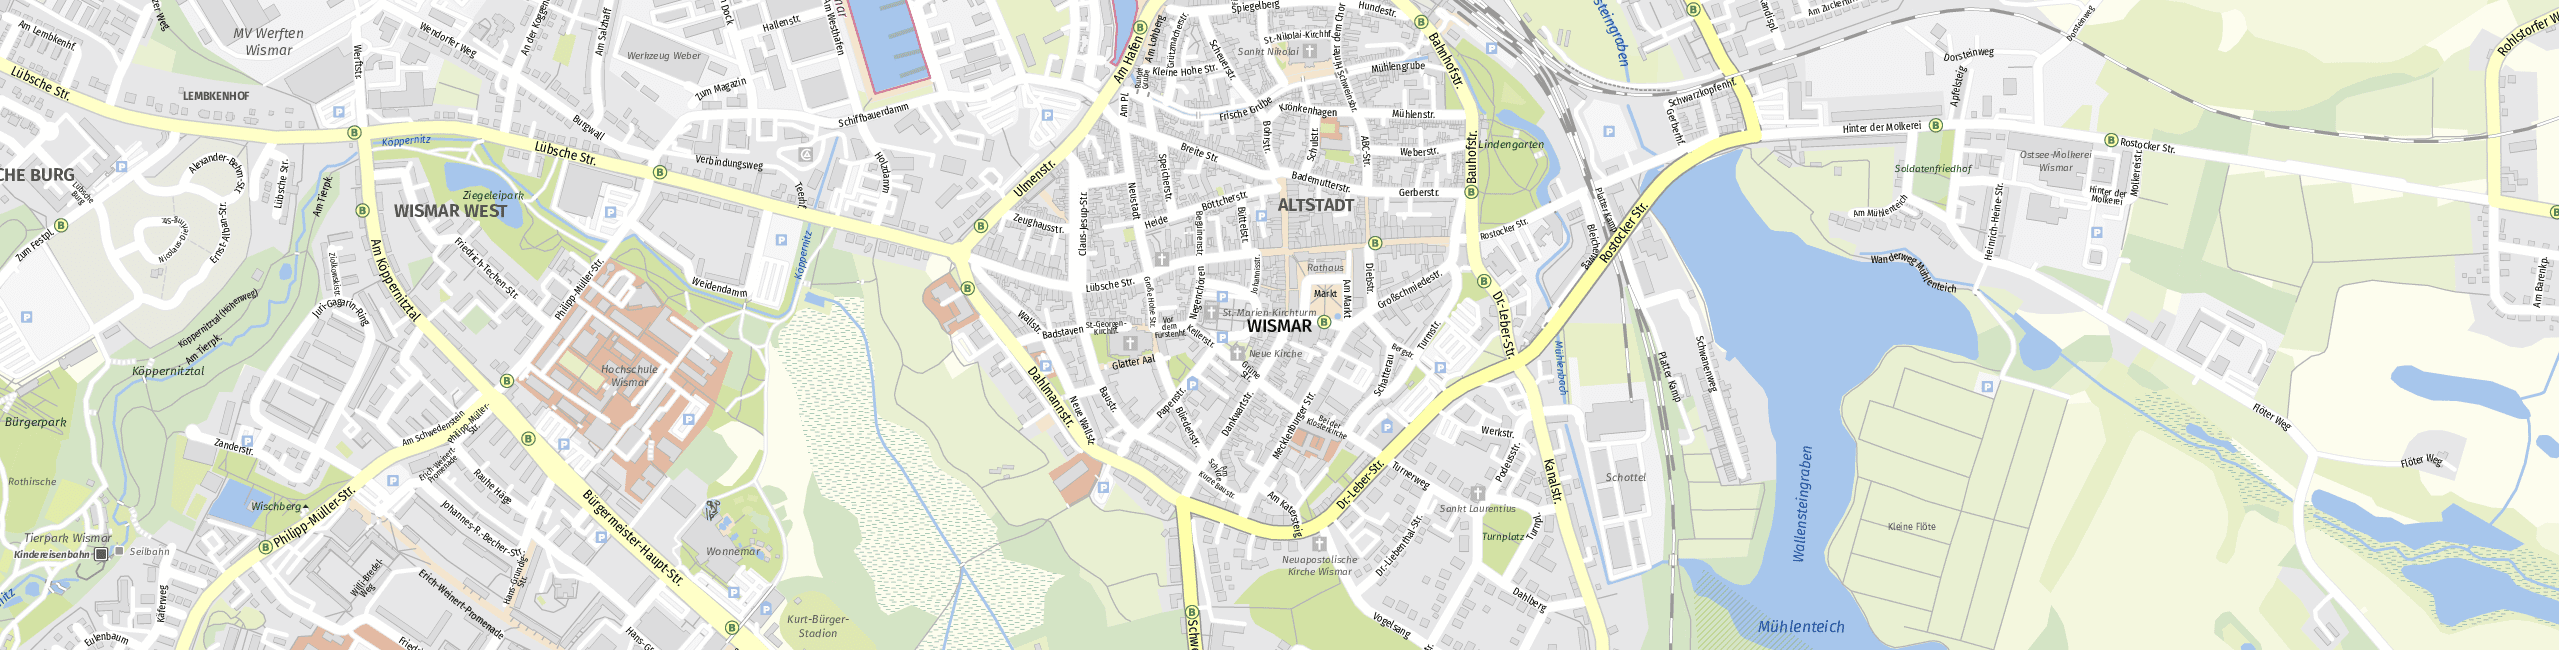 Stadtplan Wismar zum Downloaden.